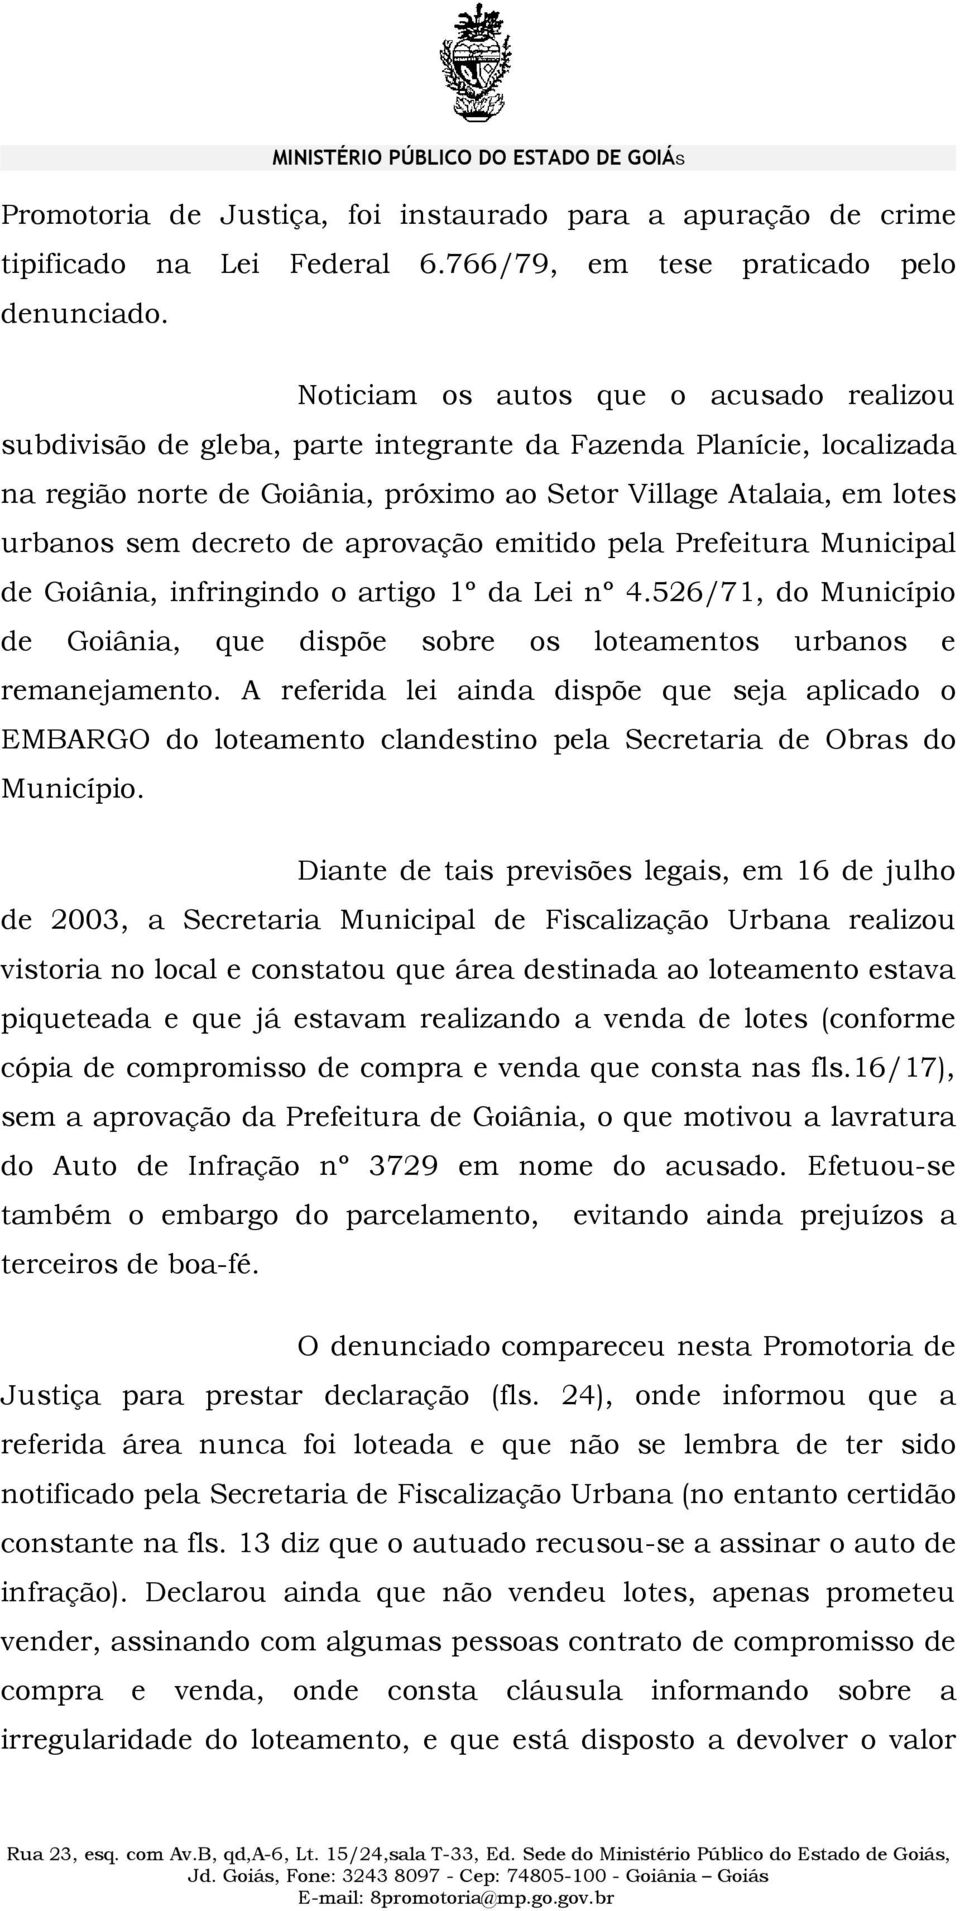 decreto de aprovação emitido pela Prefeitura Municipal de Goiânia, infringindo o artigo 1º da Lei nº 4.526/71, do Município de Goiânia, que dispõe sobre os loteamentos urbanos e remanejamento.